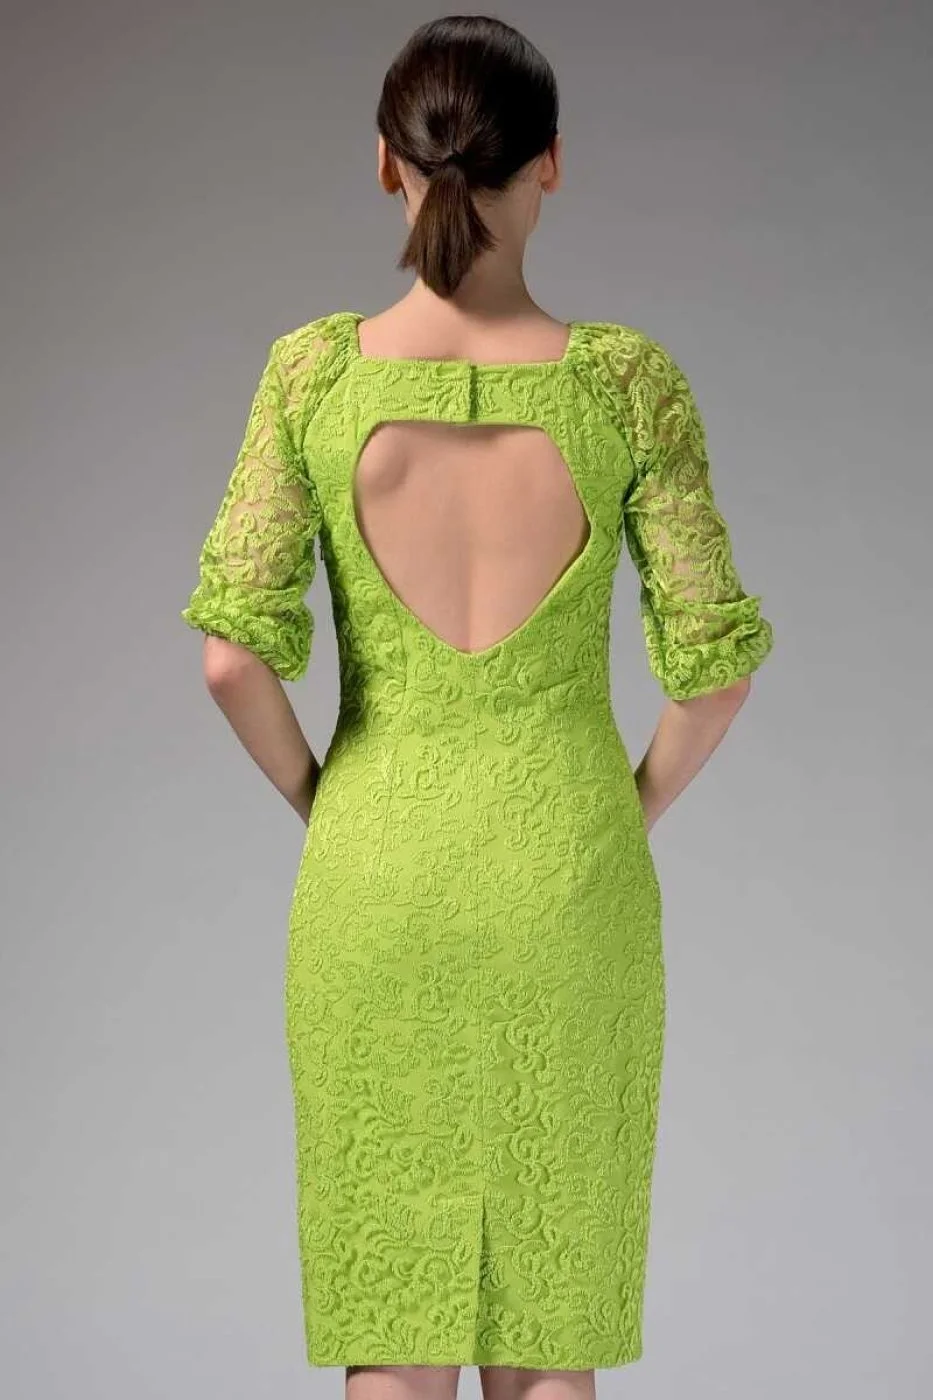  Truvakar Kol Sırt Detaylı Abiye Elbise Fıstık Yeşili - 2